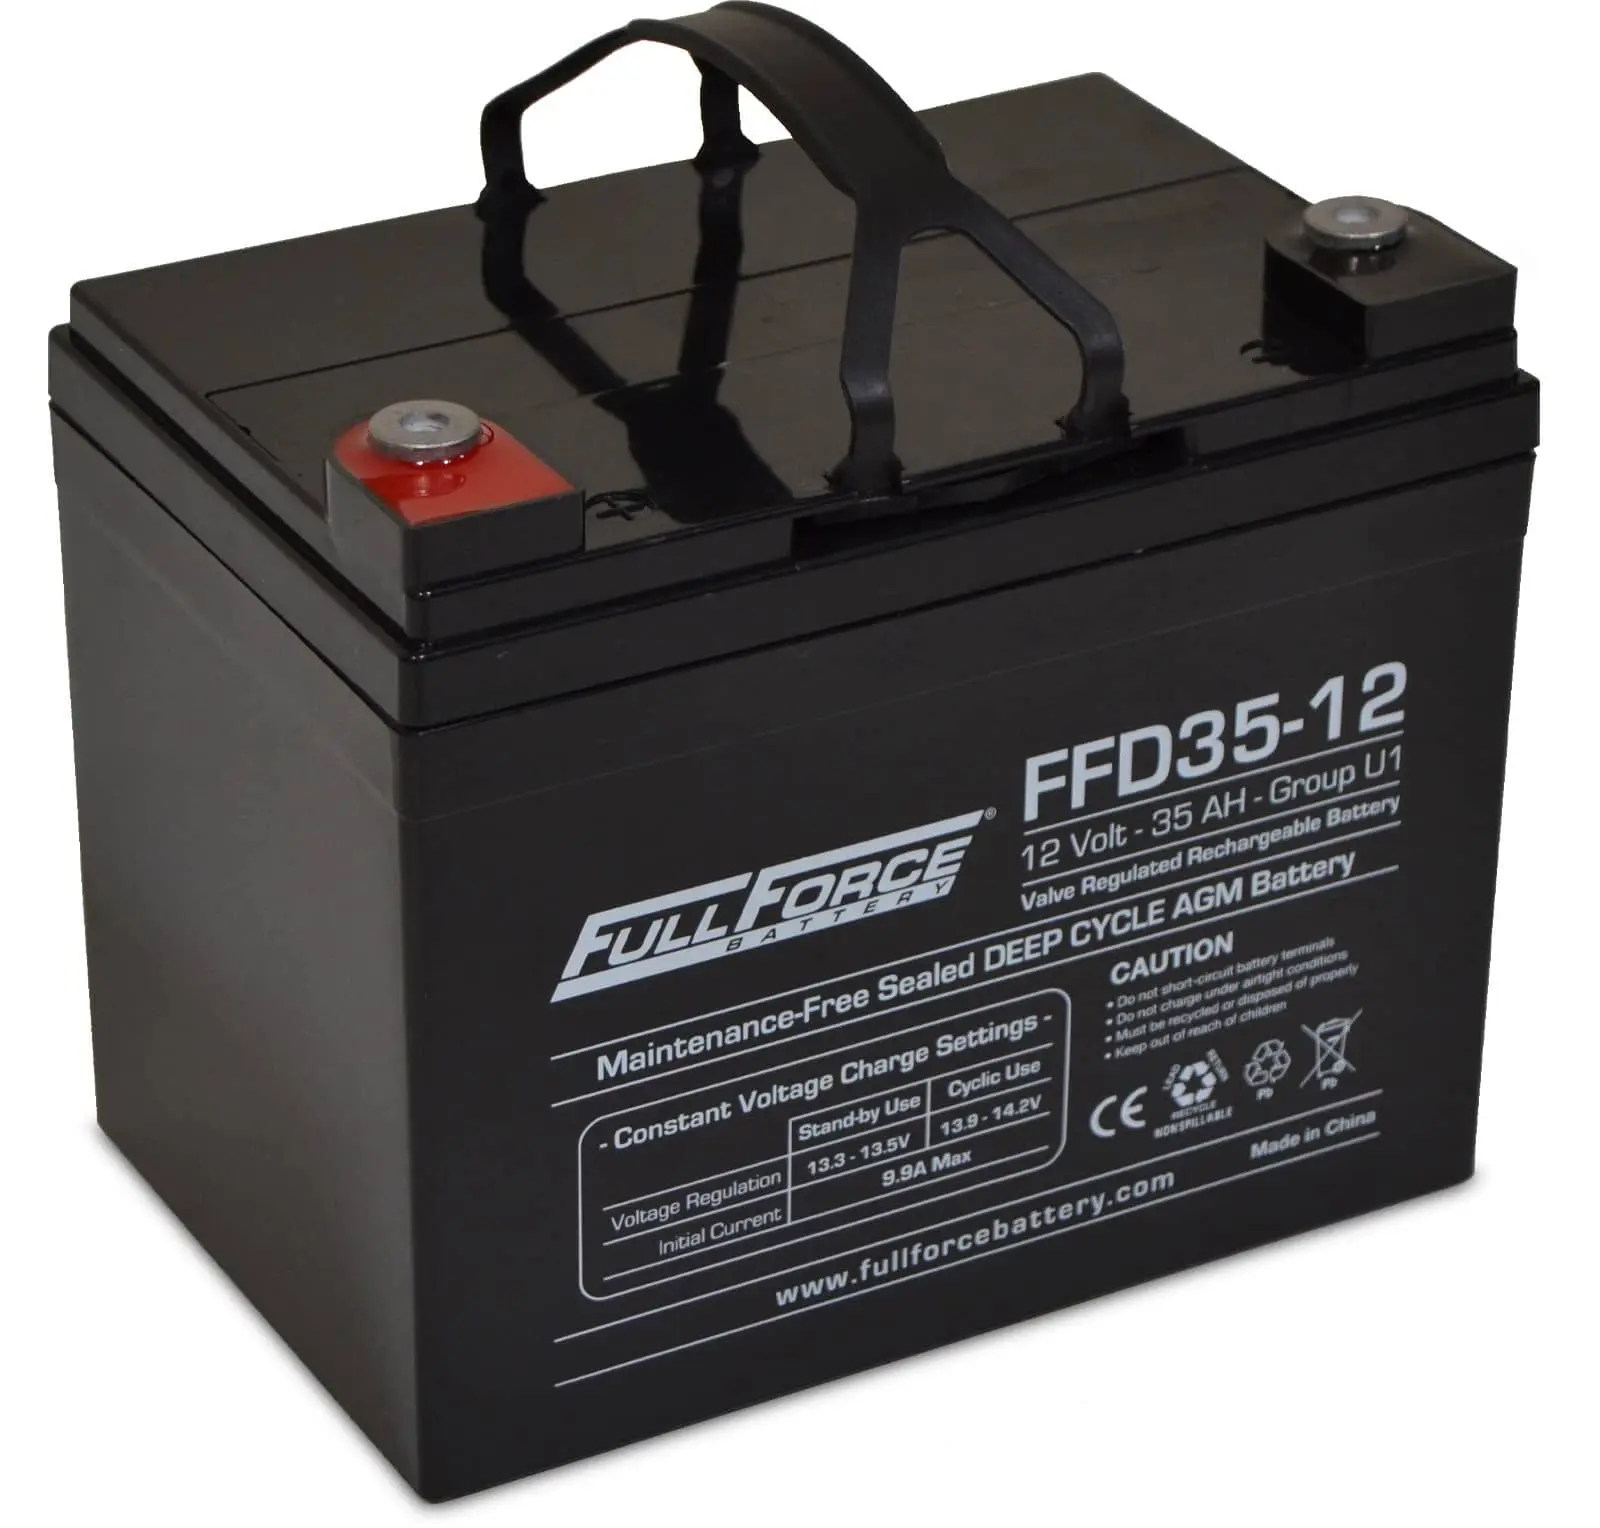 FFD35-12